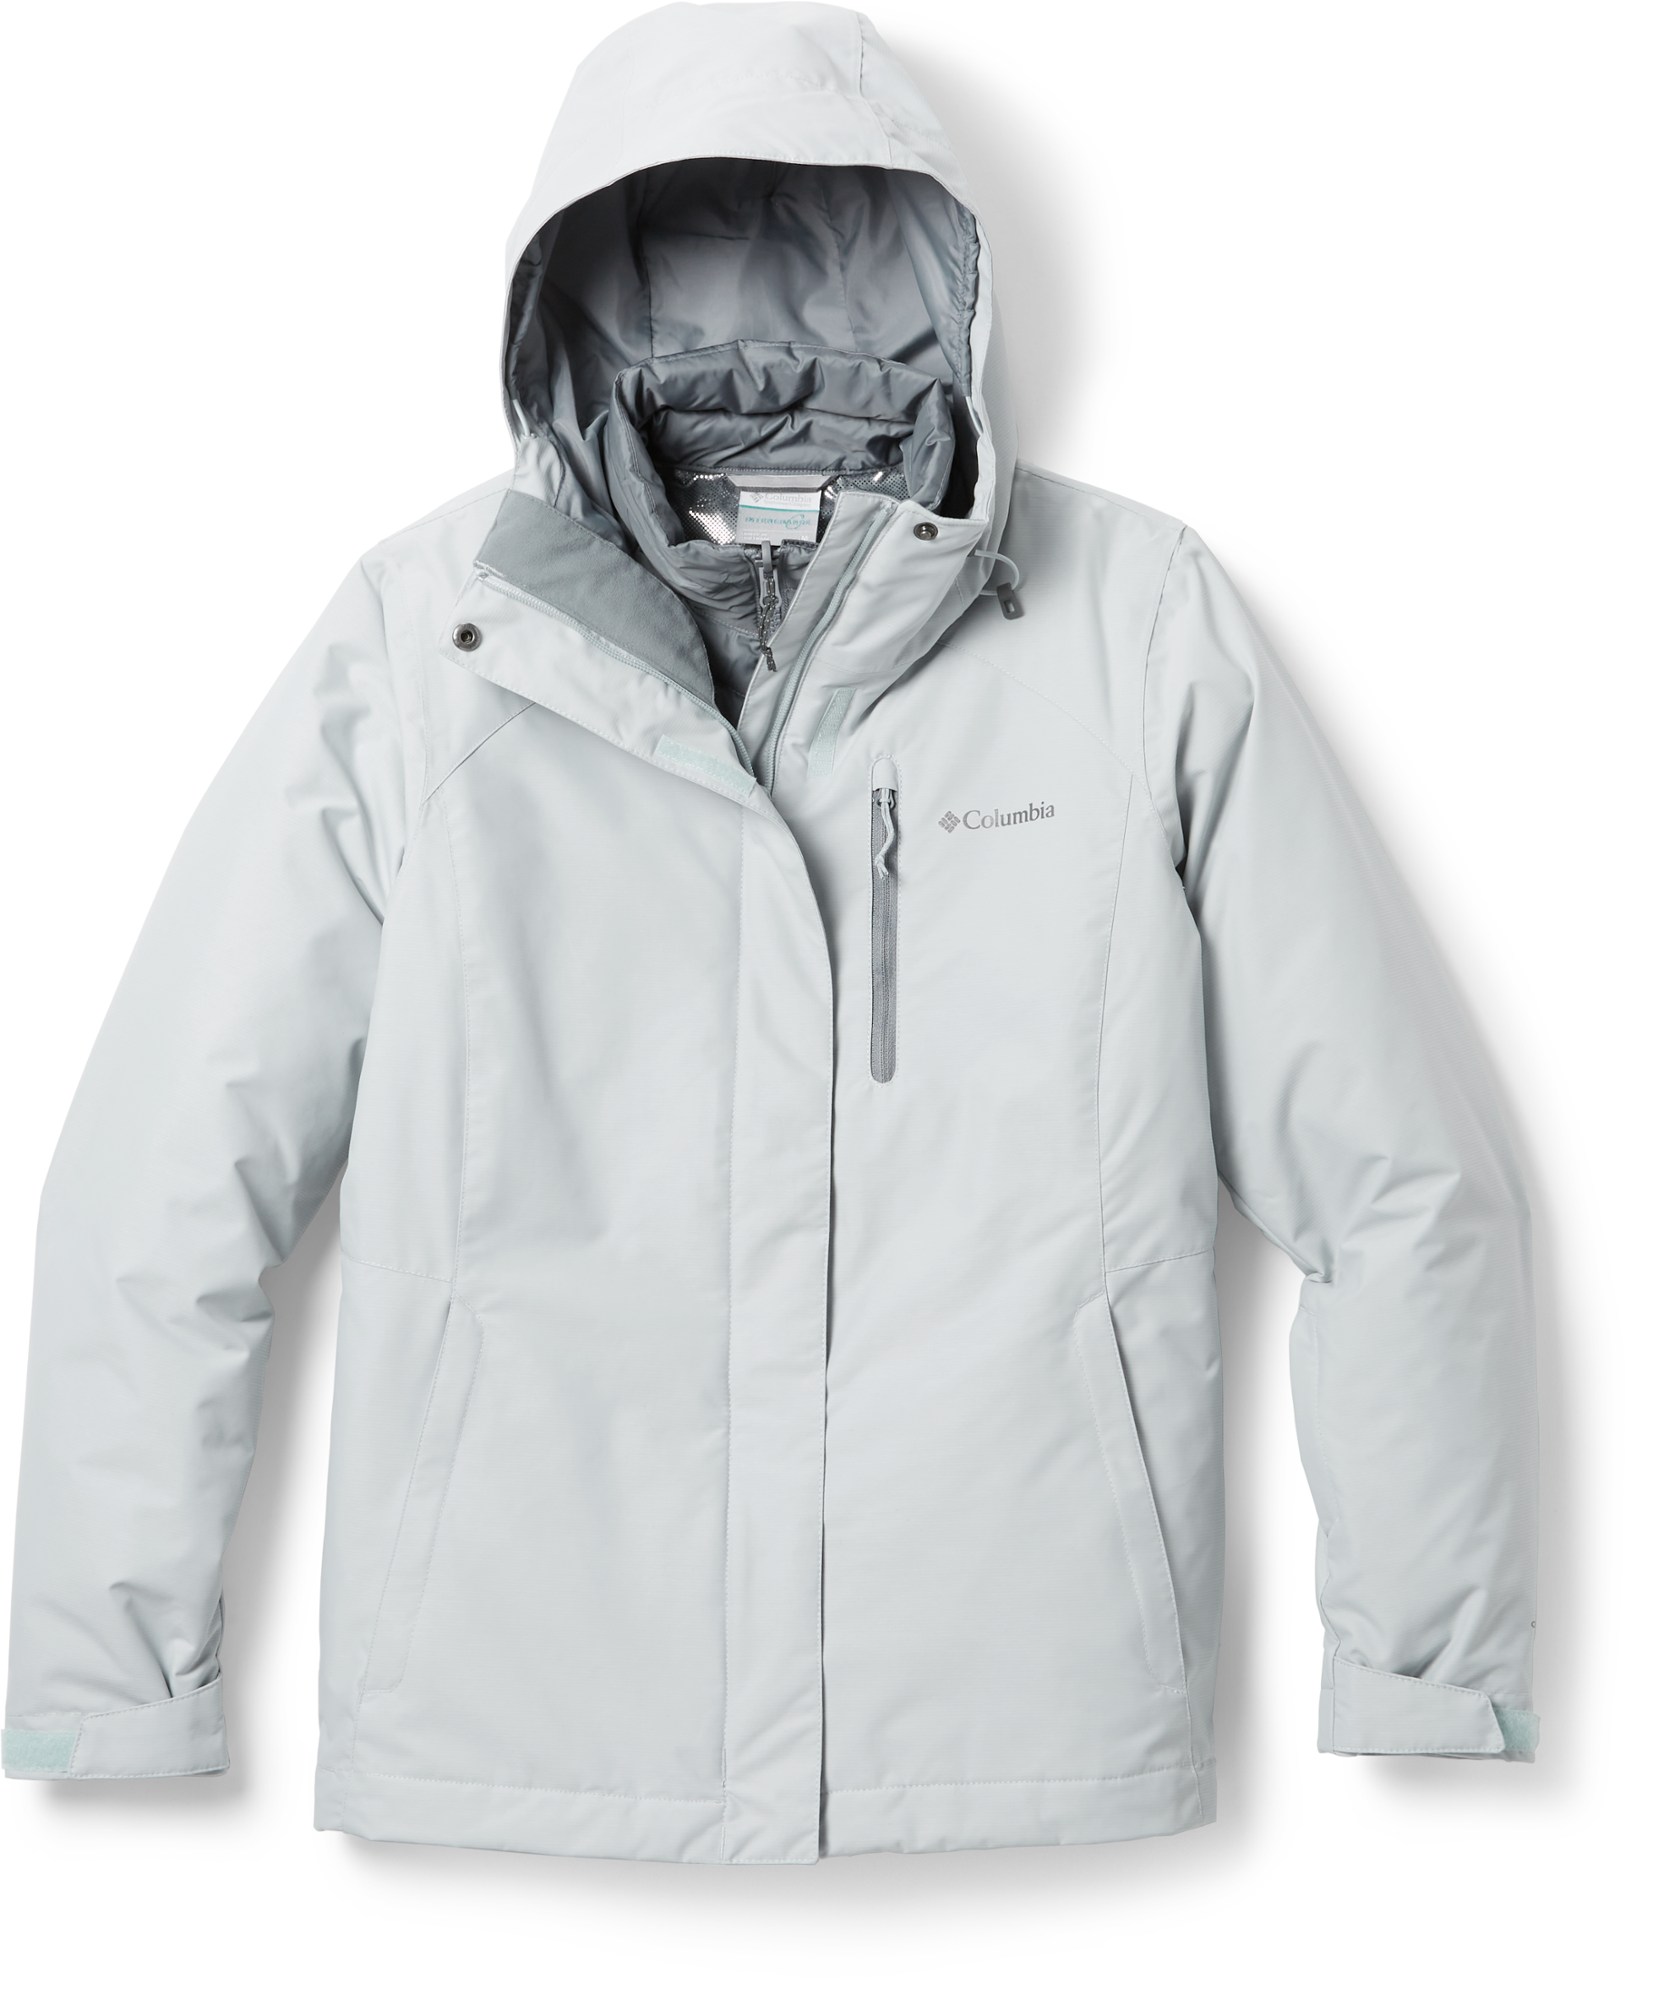 Куртка 3-в-1 Whirlibird IV Interchange — женская Columbia, серый